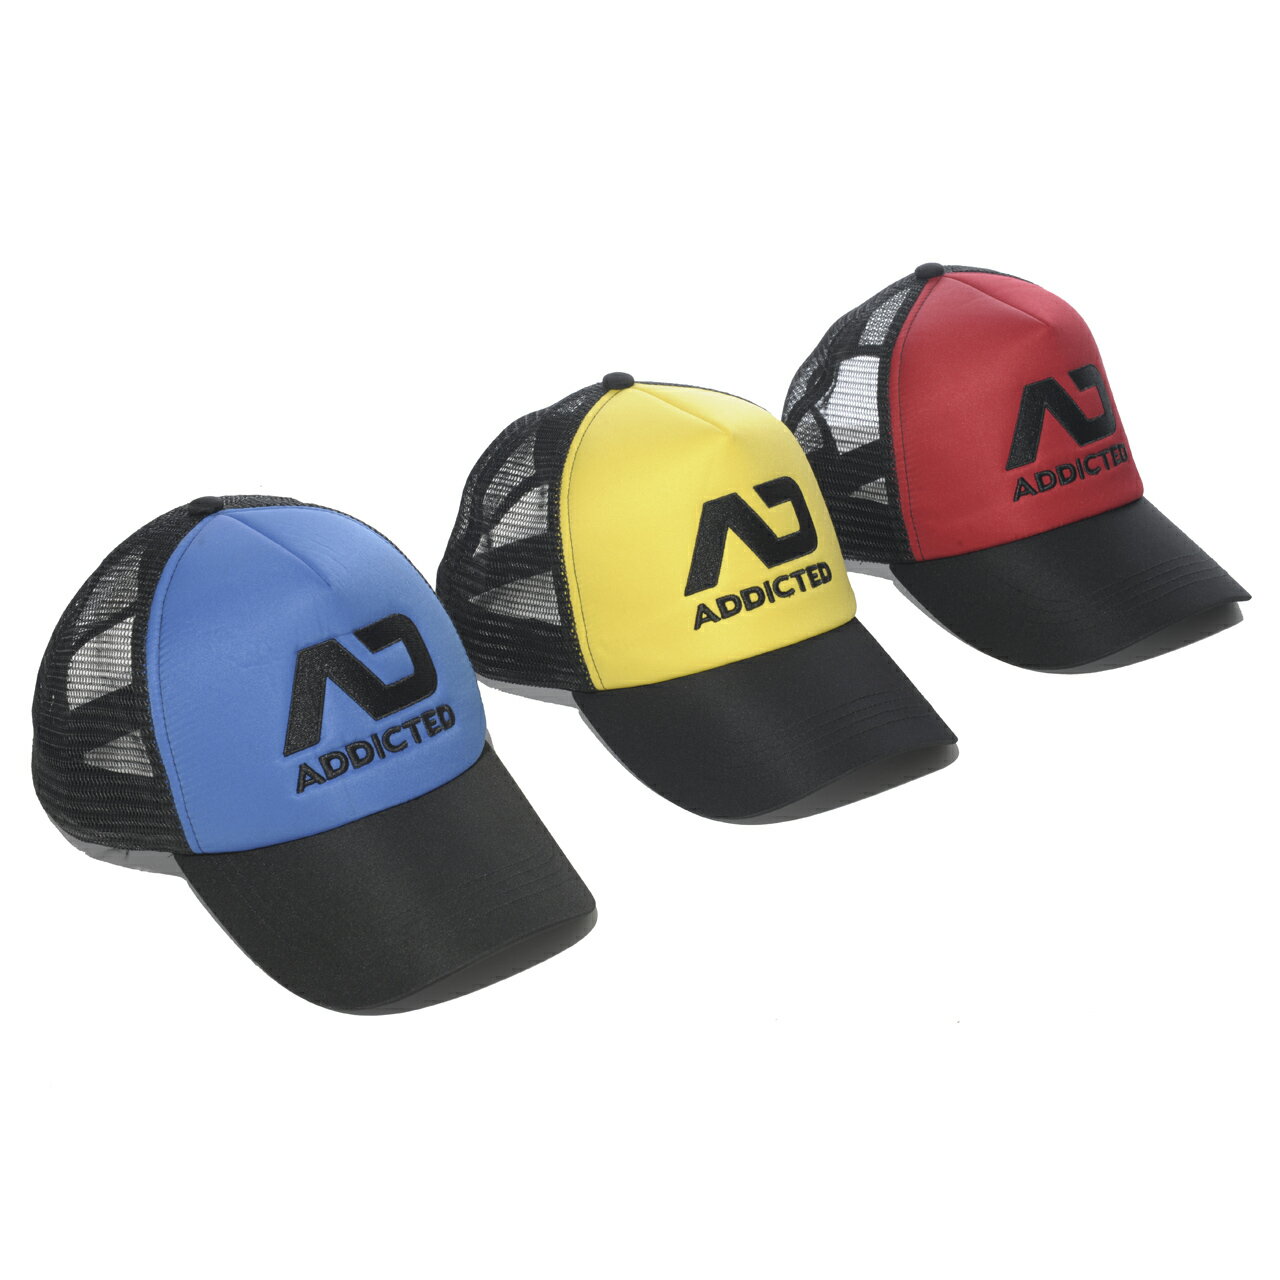 《預購》★2016春夏★ ADDICTED 戀物式棒球帽 ADDICTED AD385 FETISH CAP